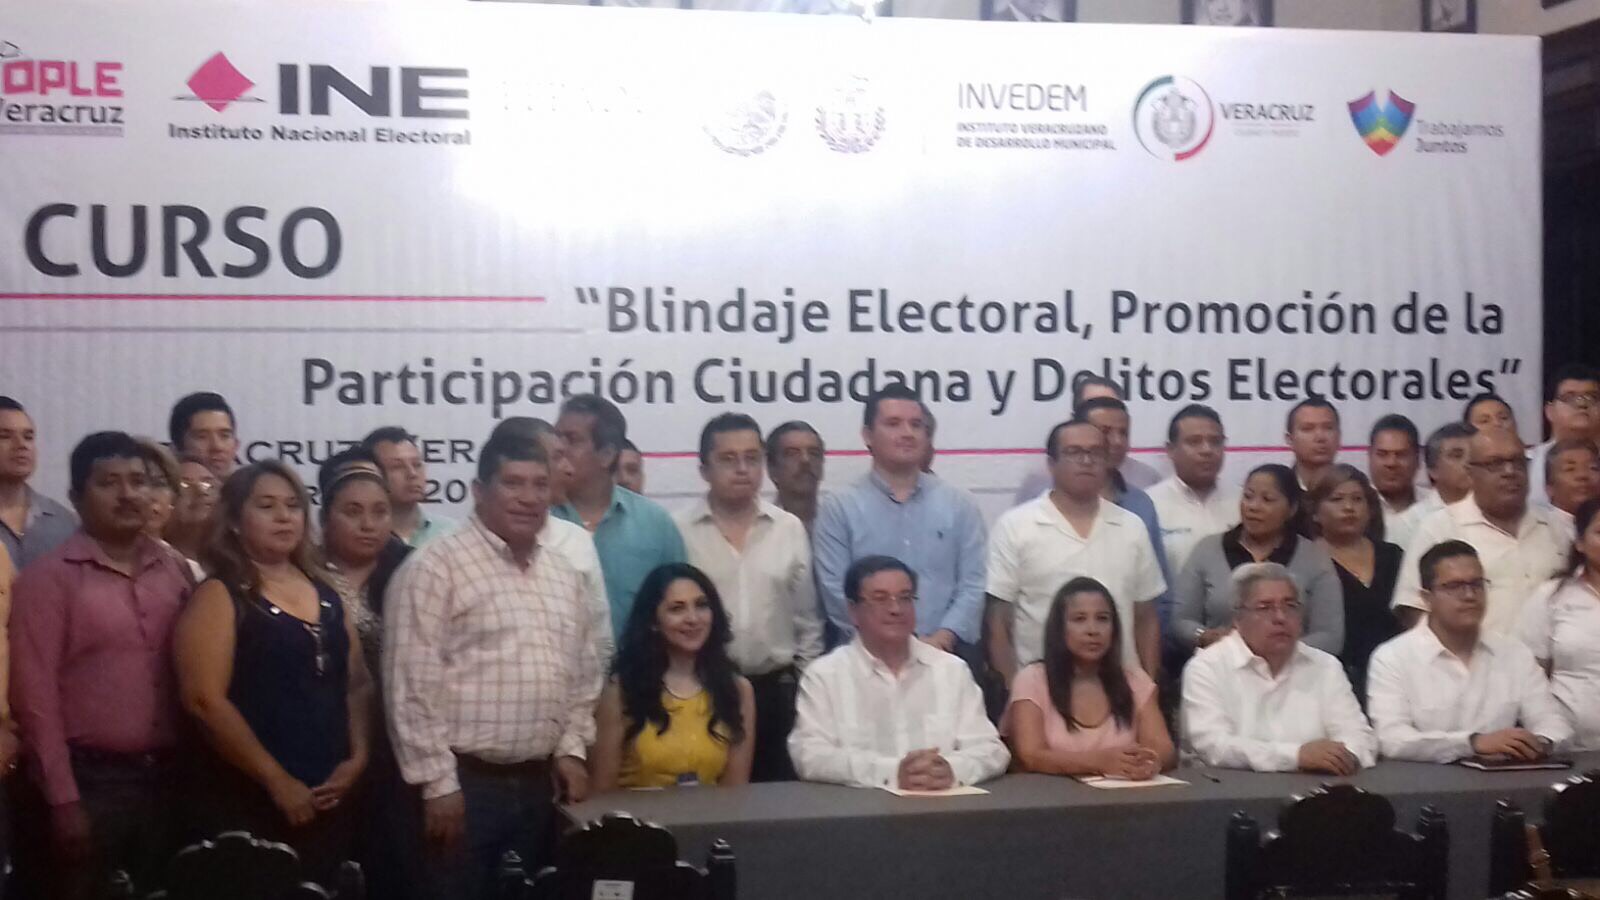 Invedem organiza curso de blindaje electoral  para servidores públicos en Veracruz